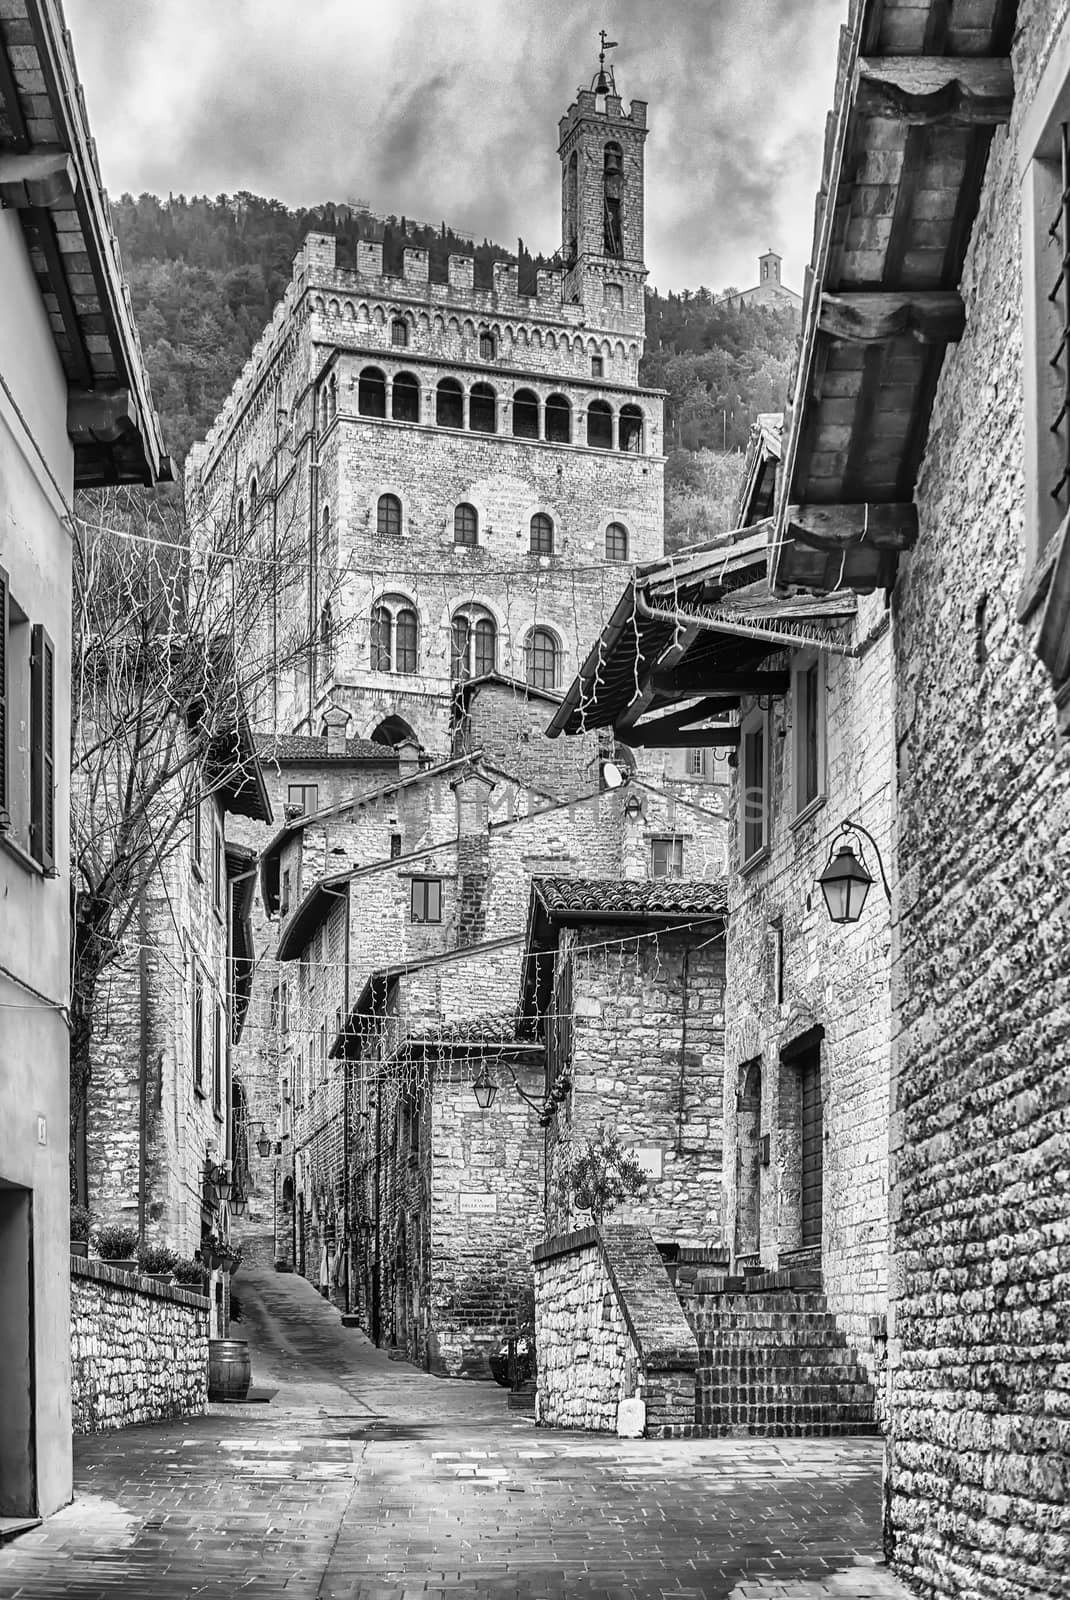 View of Palazzo dei Consoli, medieval building in Gubbio, Italy by marcorubino